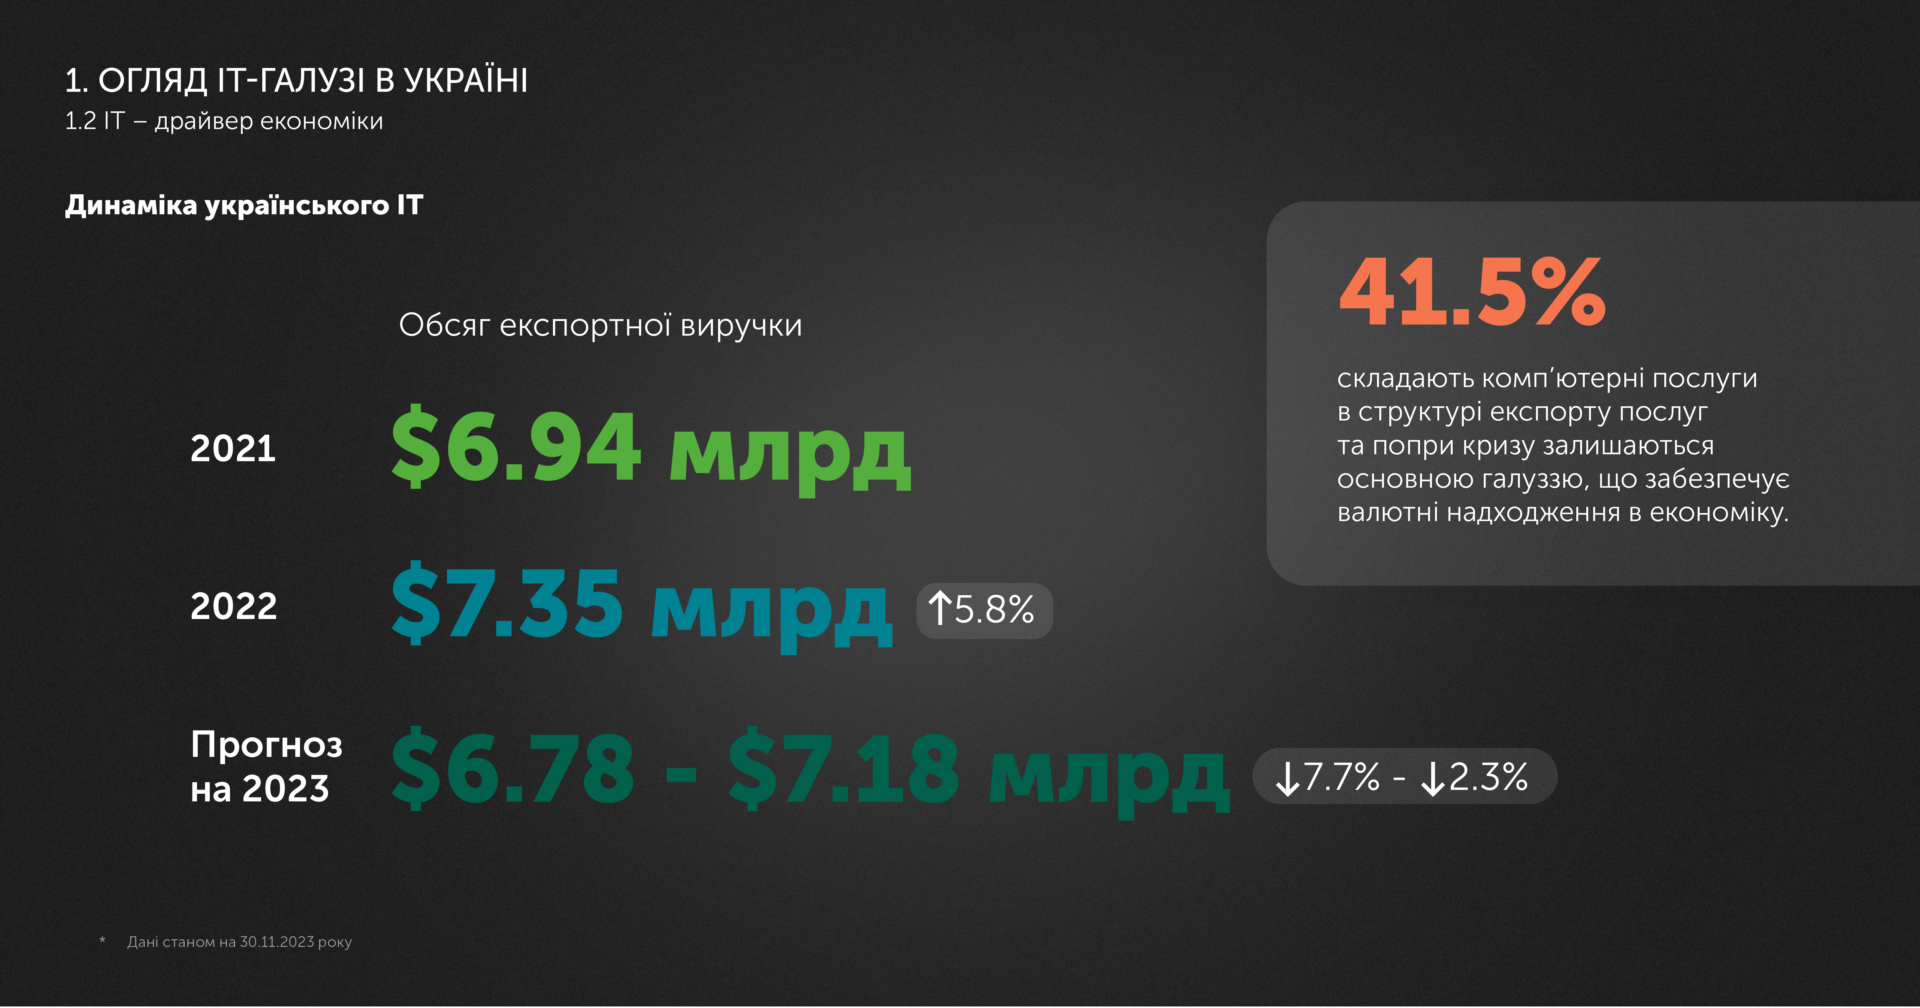 В українському IT-аутсорсингу наразі працює 307 тисяч фахівців